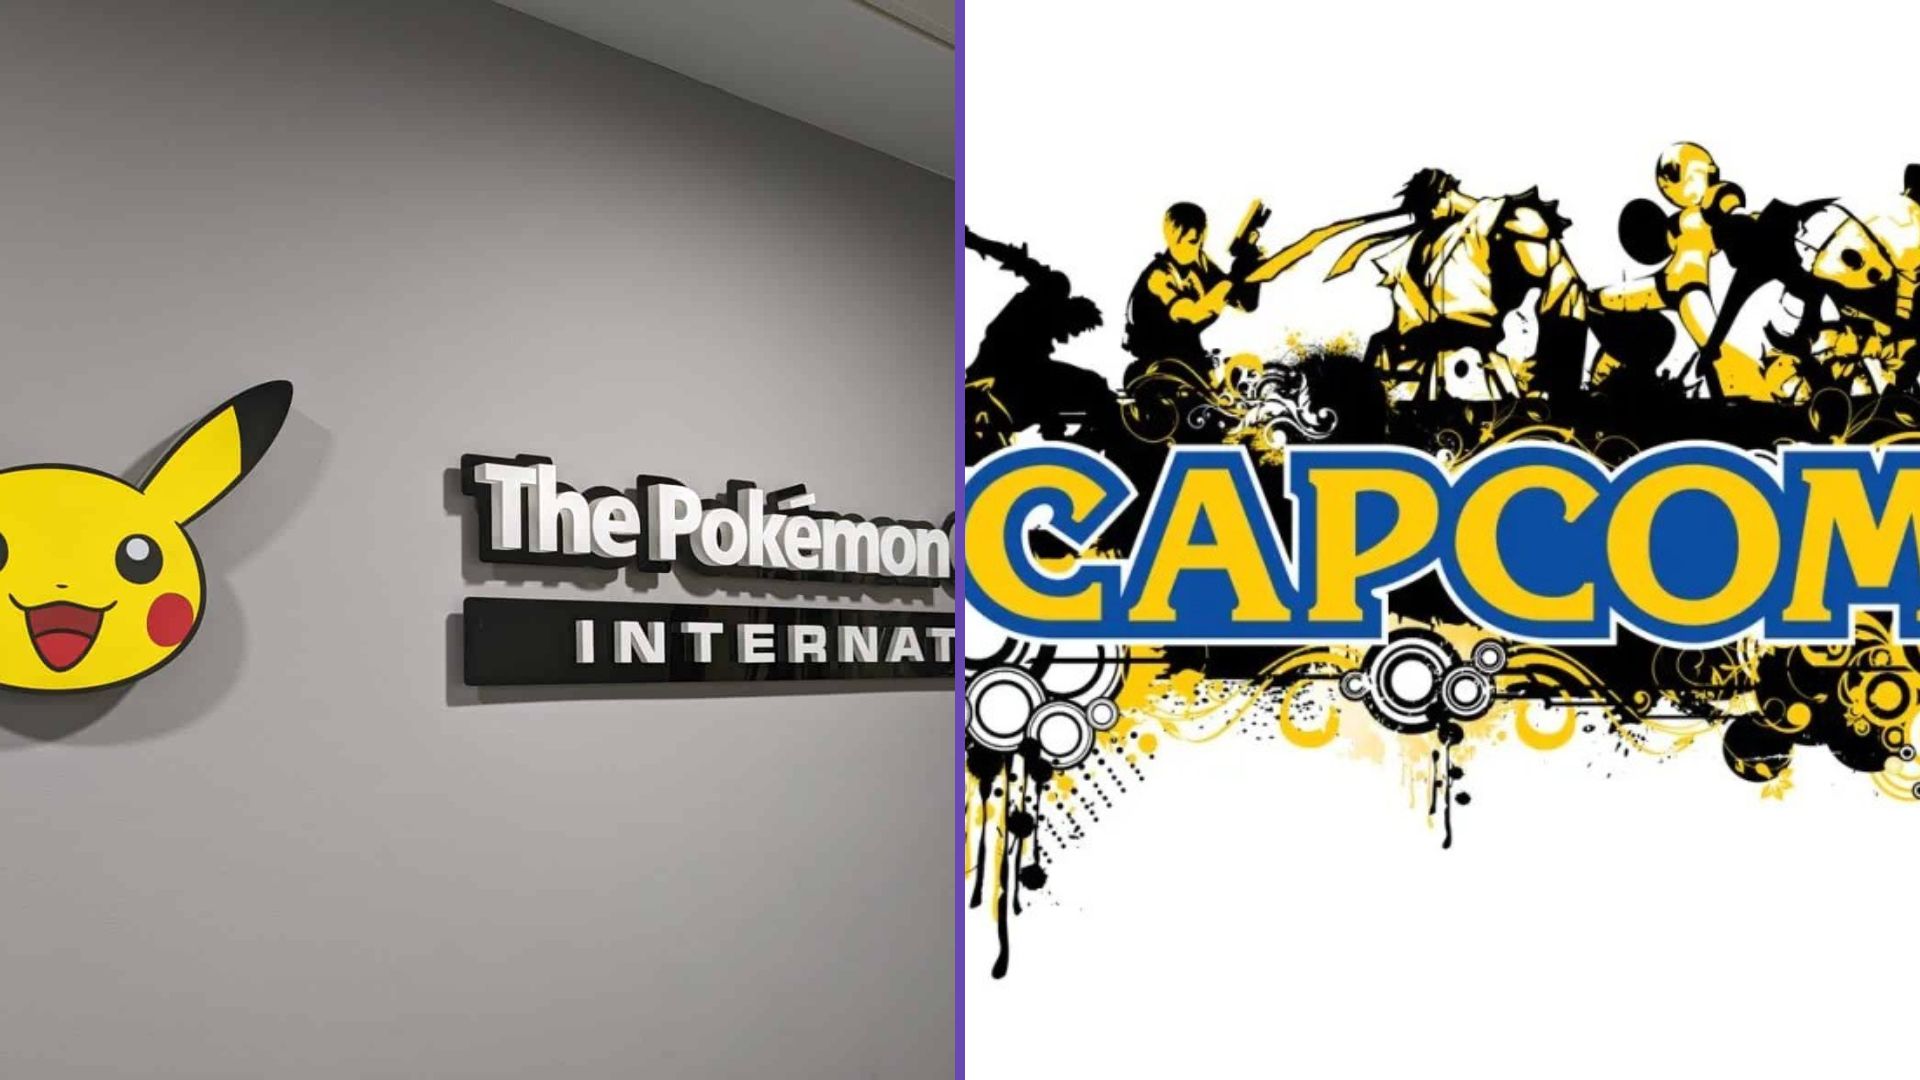 Capcom And Pokémon Company Donate To January 1st Earthquake Victims